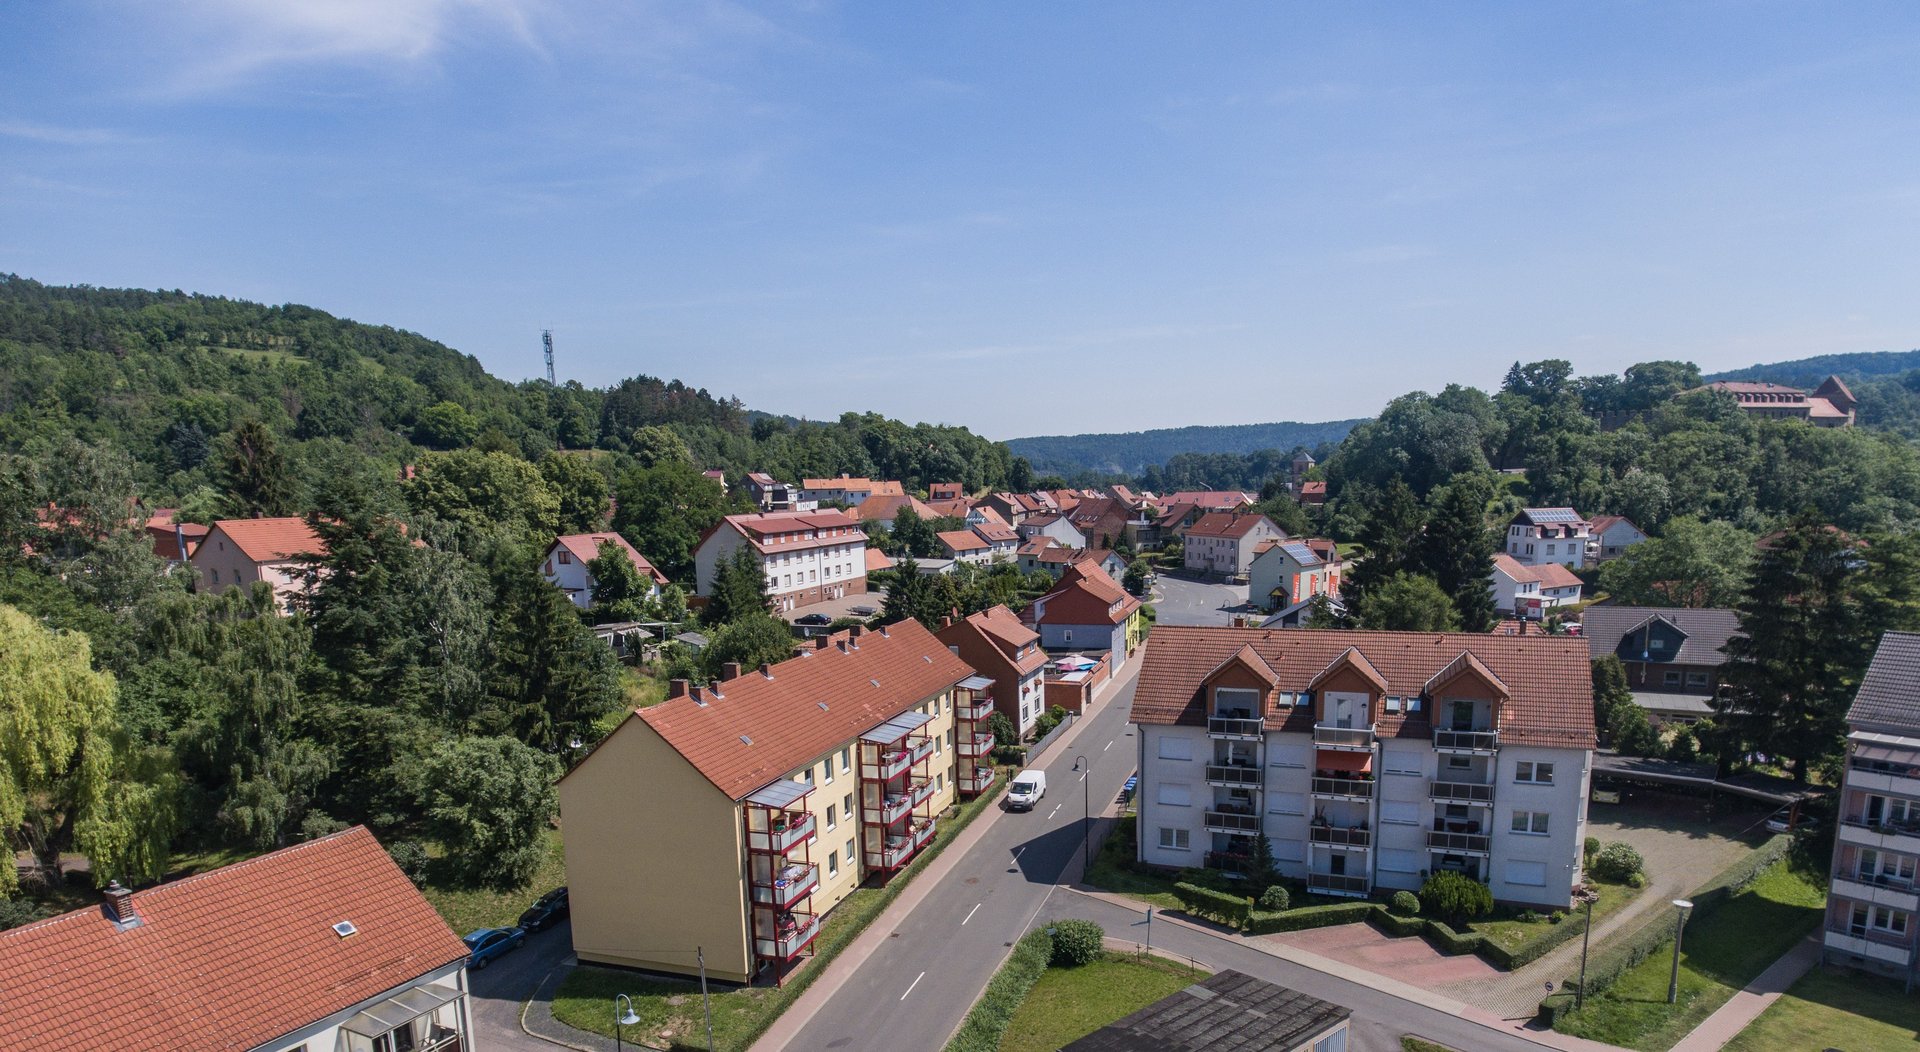 Blick über die Wohnblöcke in der Stadt Creuzburg